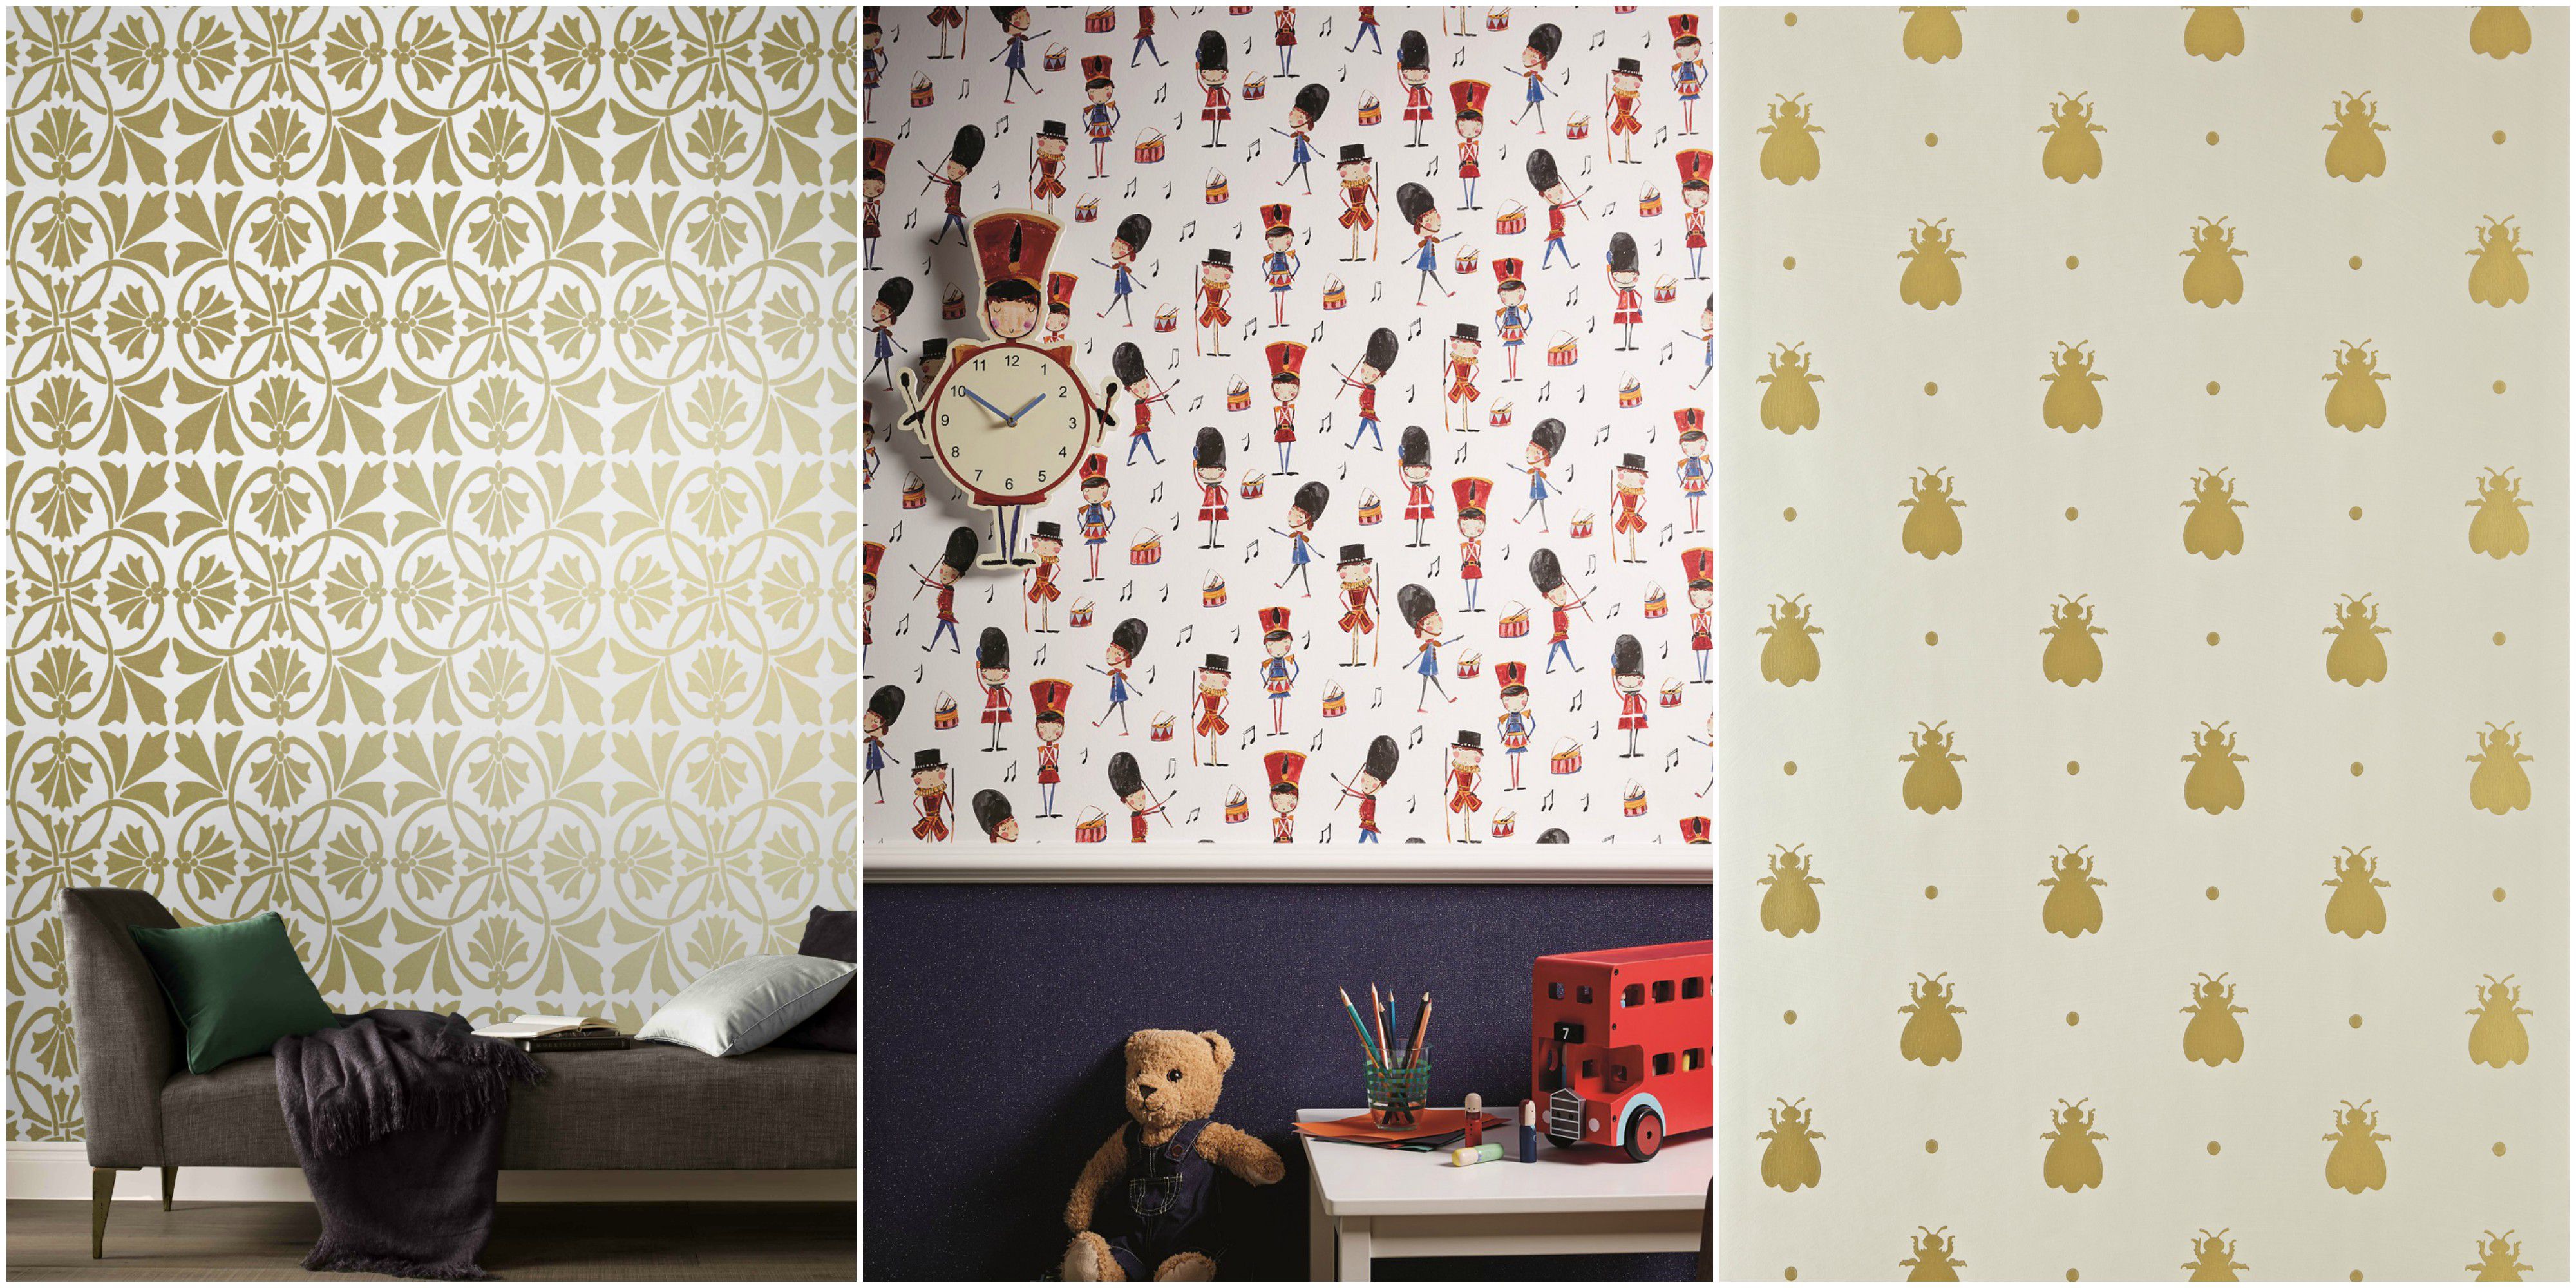 royal nursery wallpaper ideas QXIJGYX